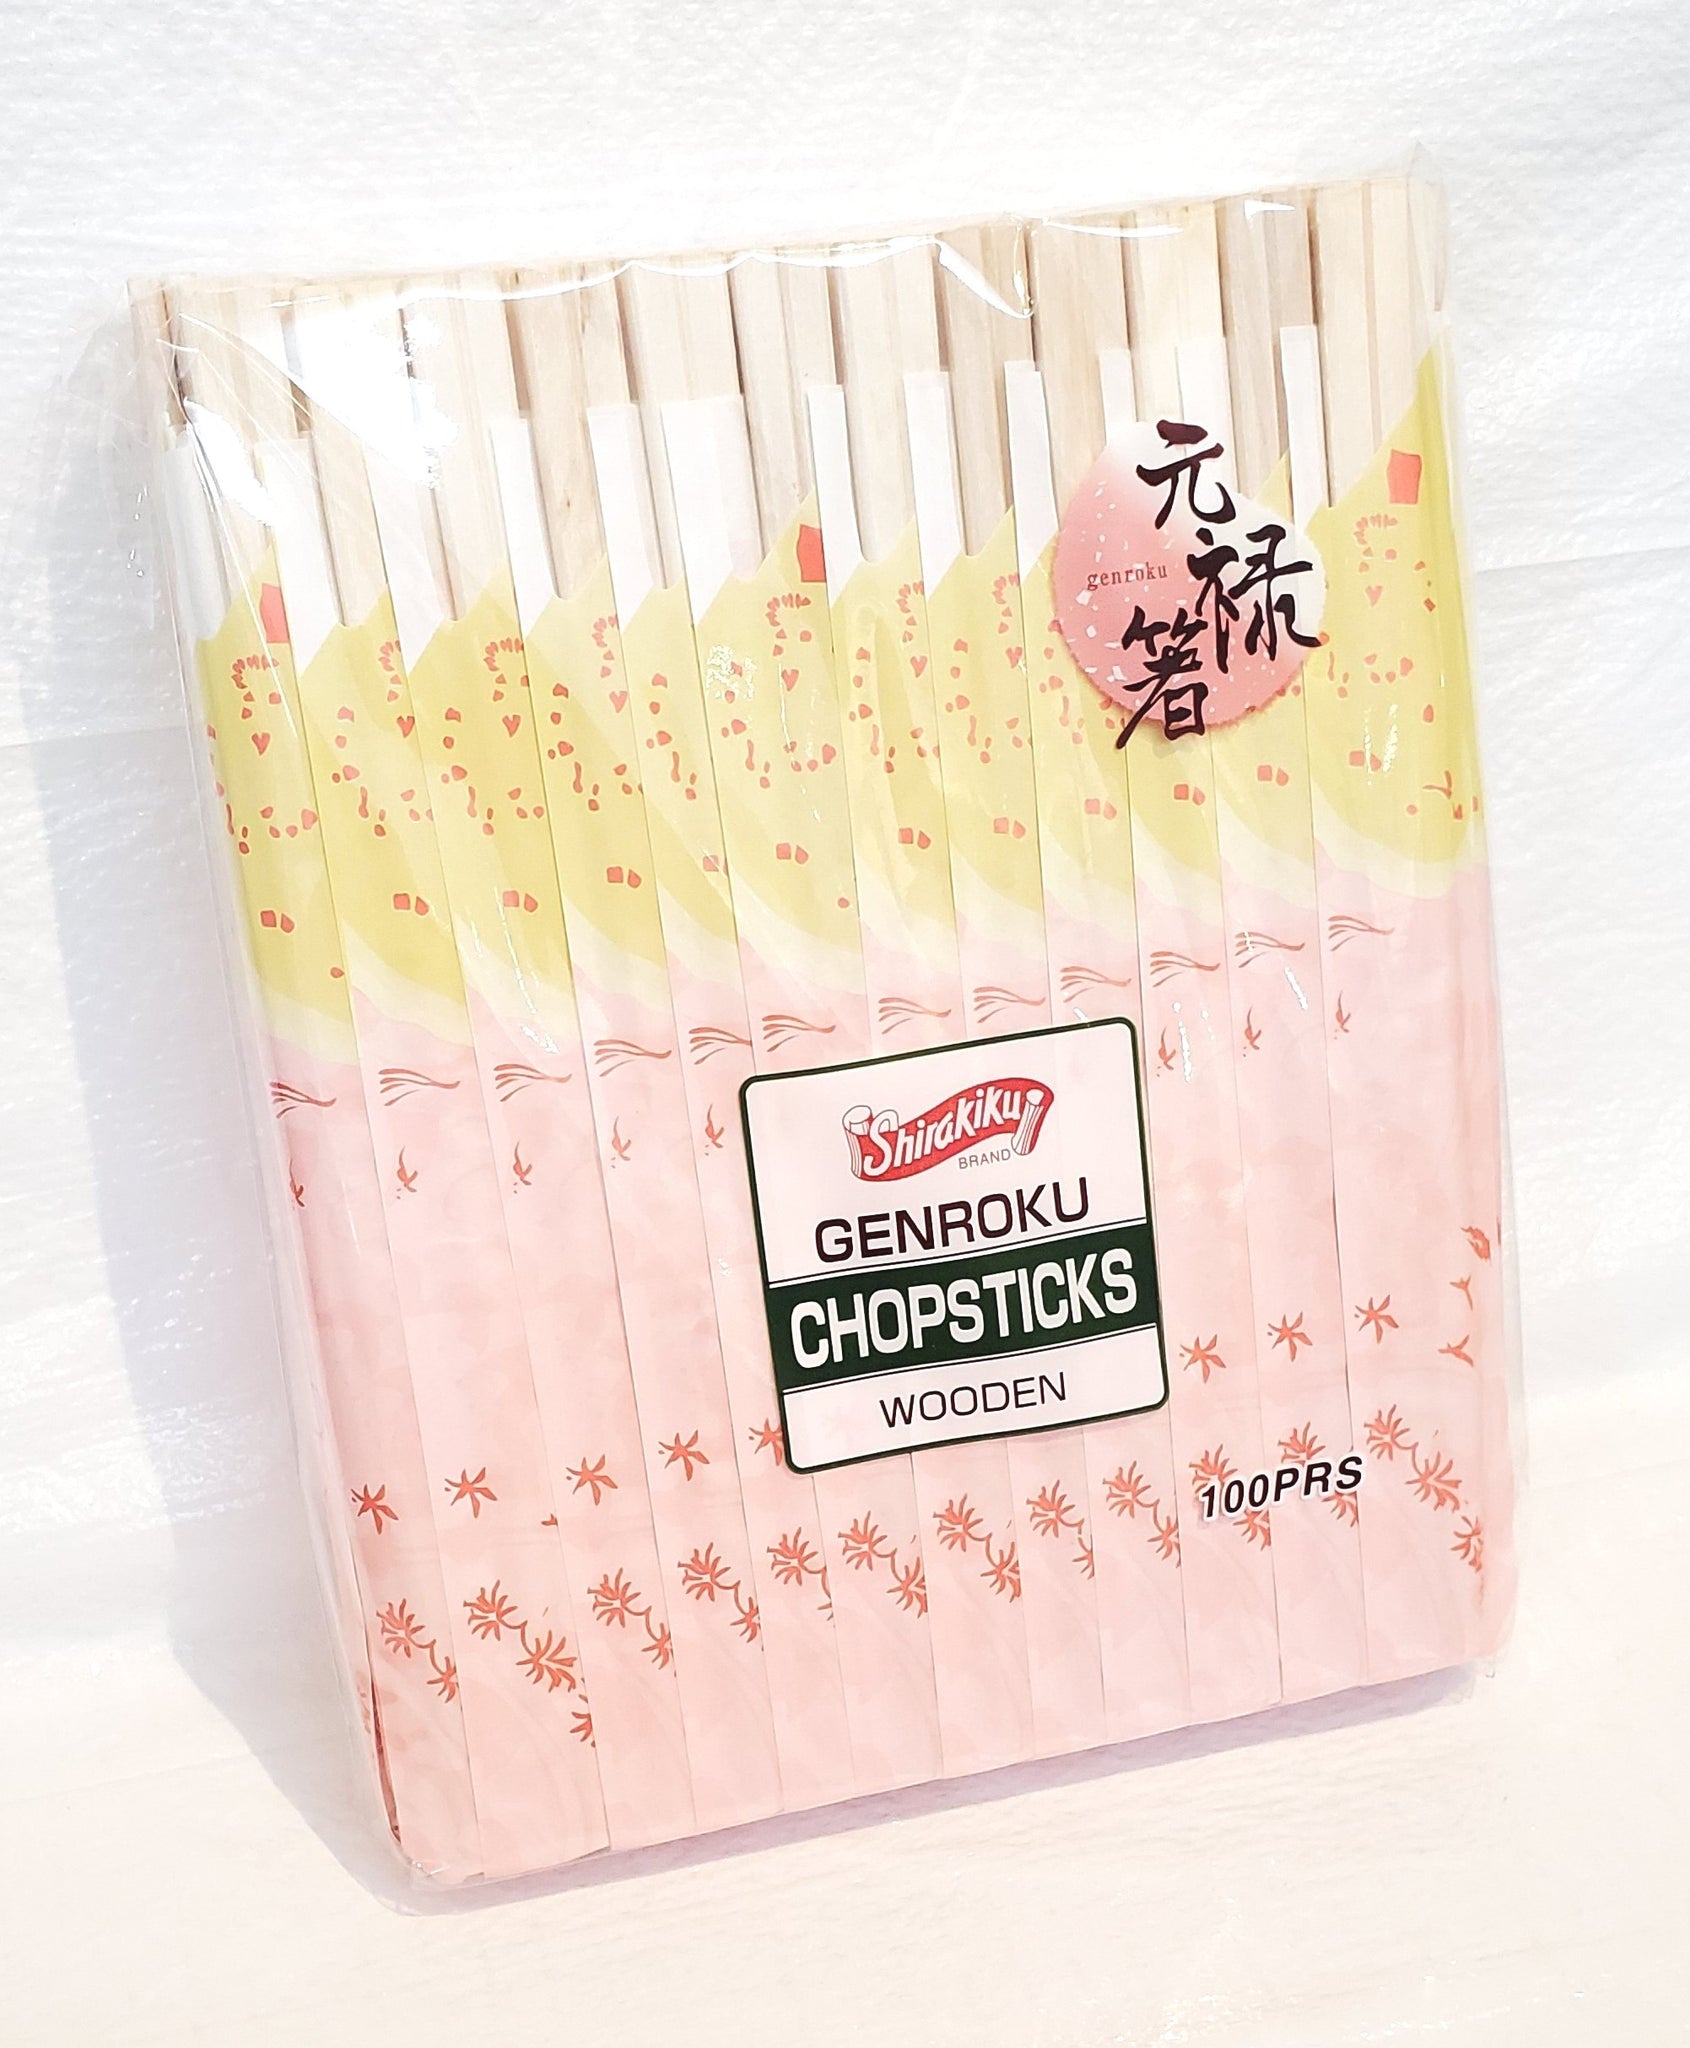 Shirakiku wooden chopsticks (100 pairs) 白菊印木制筷子